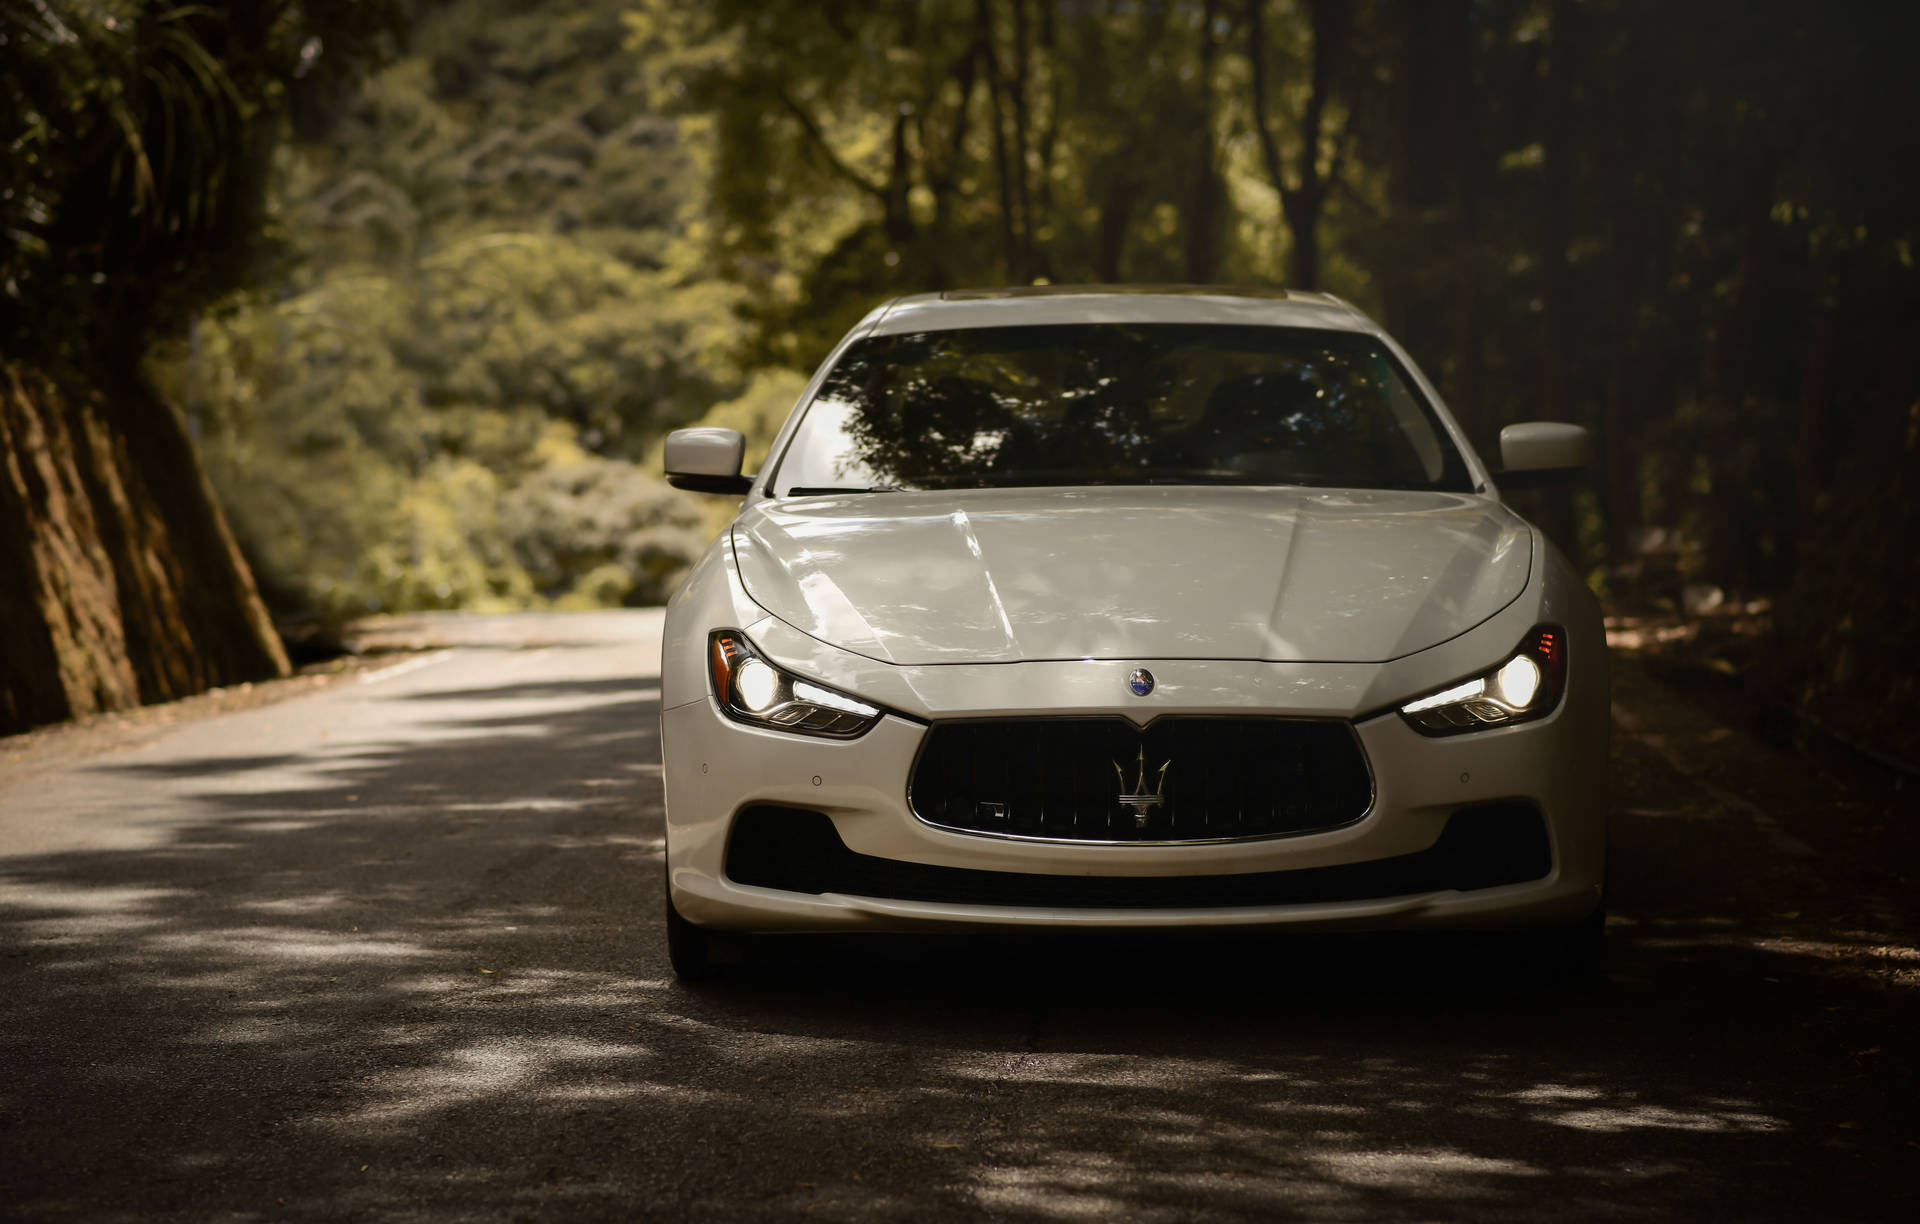 White Maserati Ghibli Forest Picture